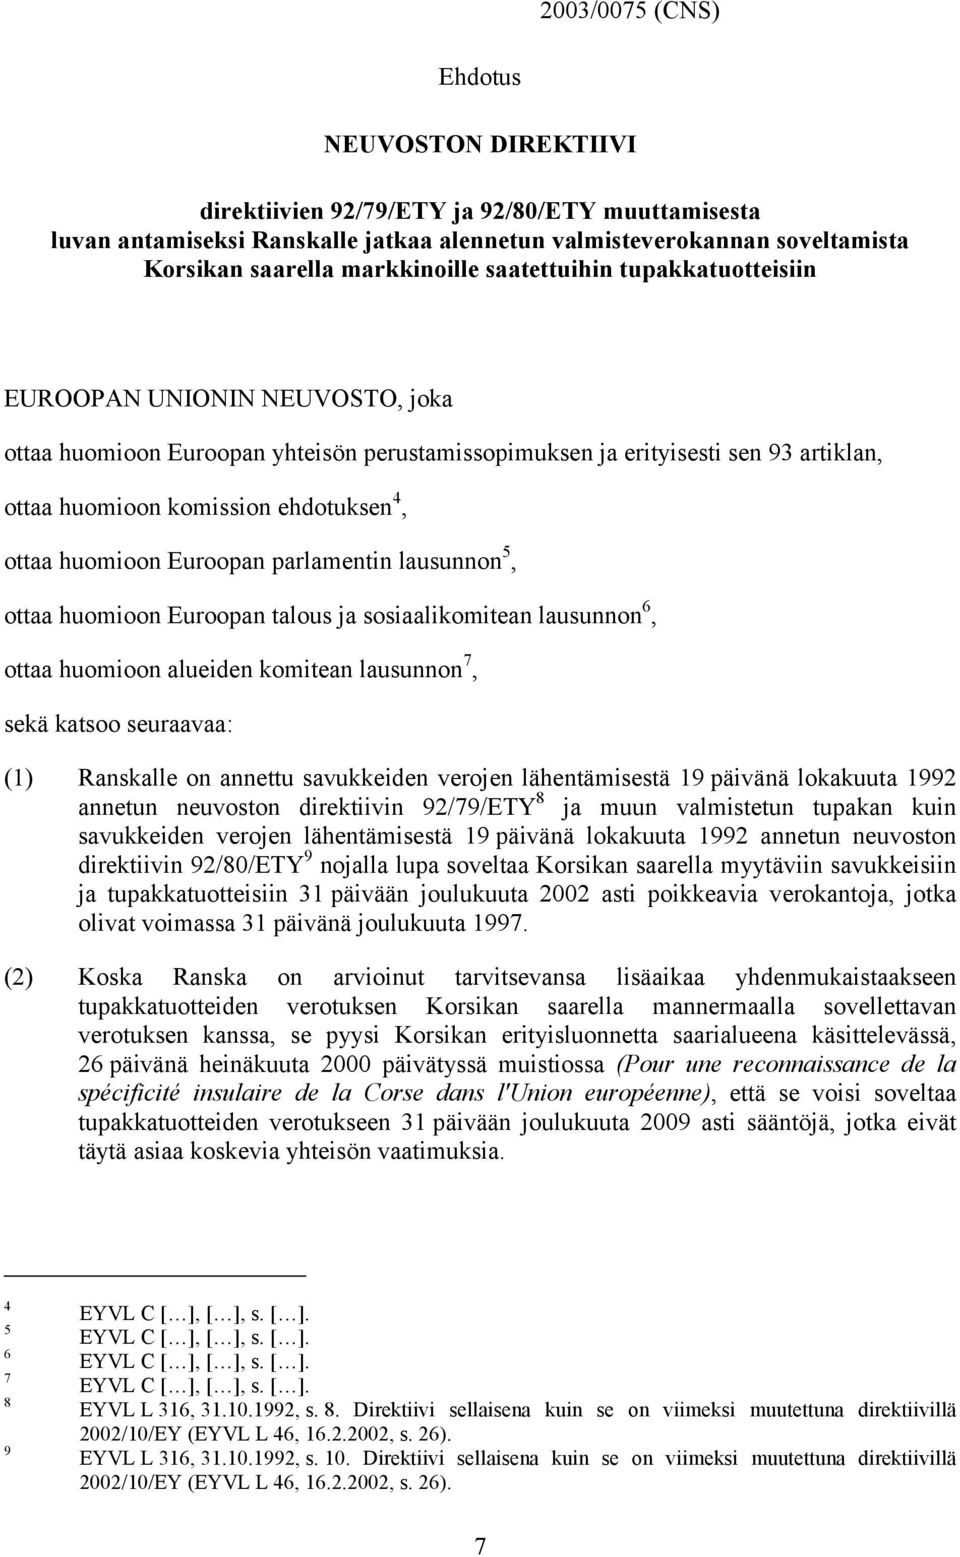 4, ottaa huomioon Euroopan parlamentin lausunnon 5, ottaa huomioon Euroopan talous ja sosiaalikomitean lausunnon 6, ottaa huomioon alueiden komitean lausunnon 7, sekä katsoo seuraavaa: (1) Ranskalle